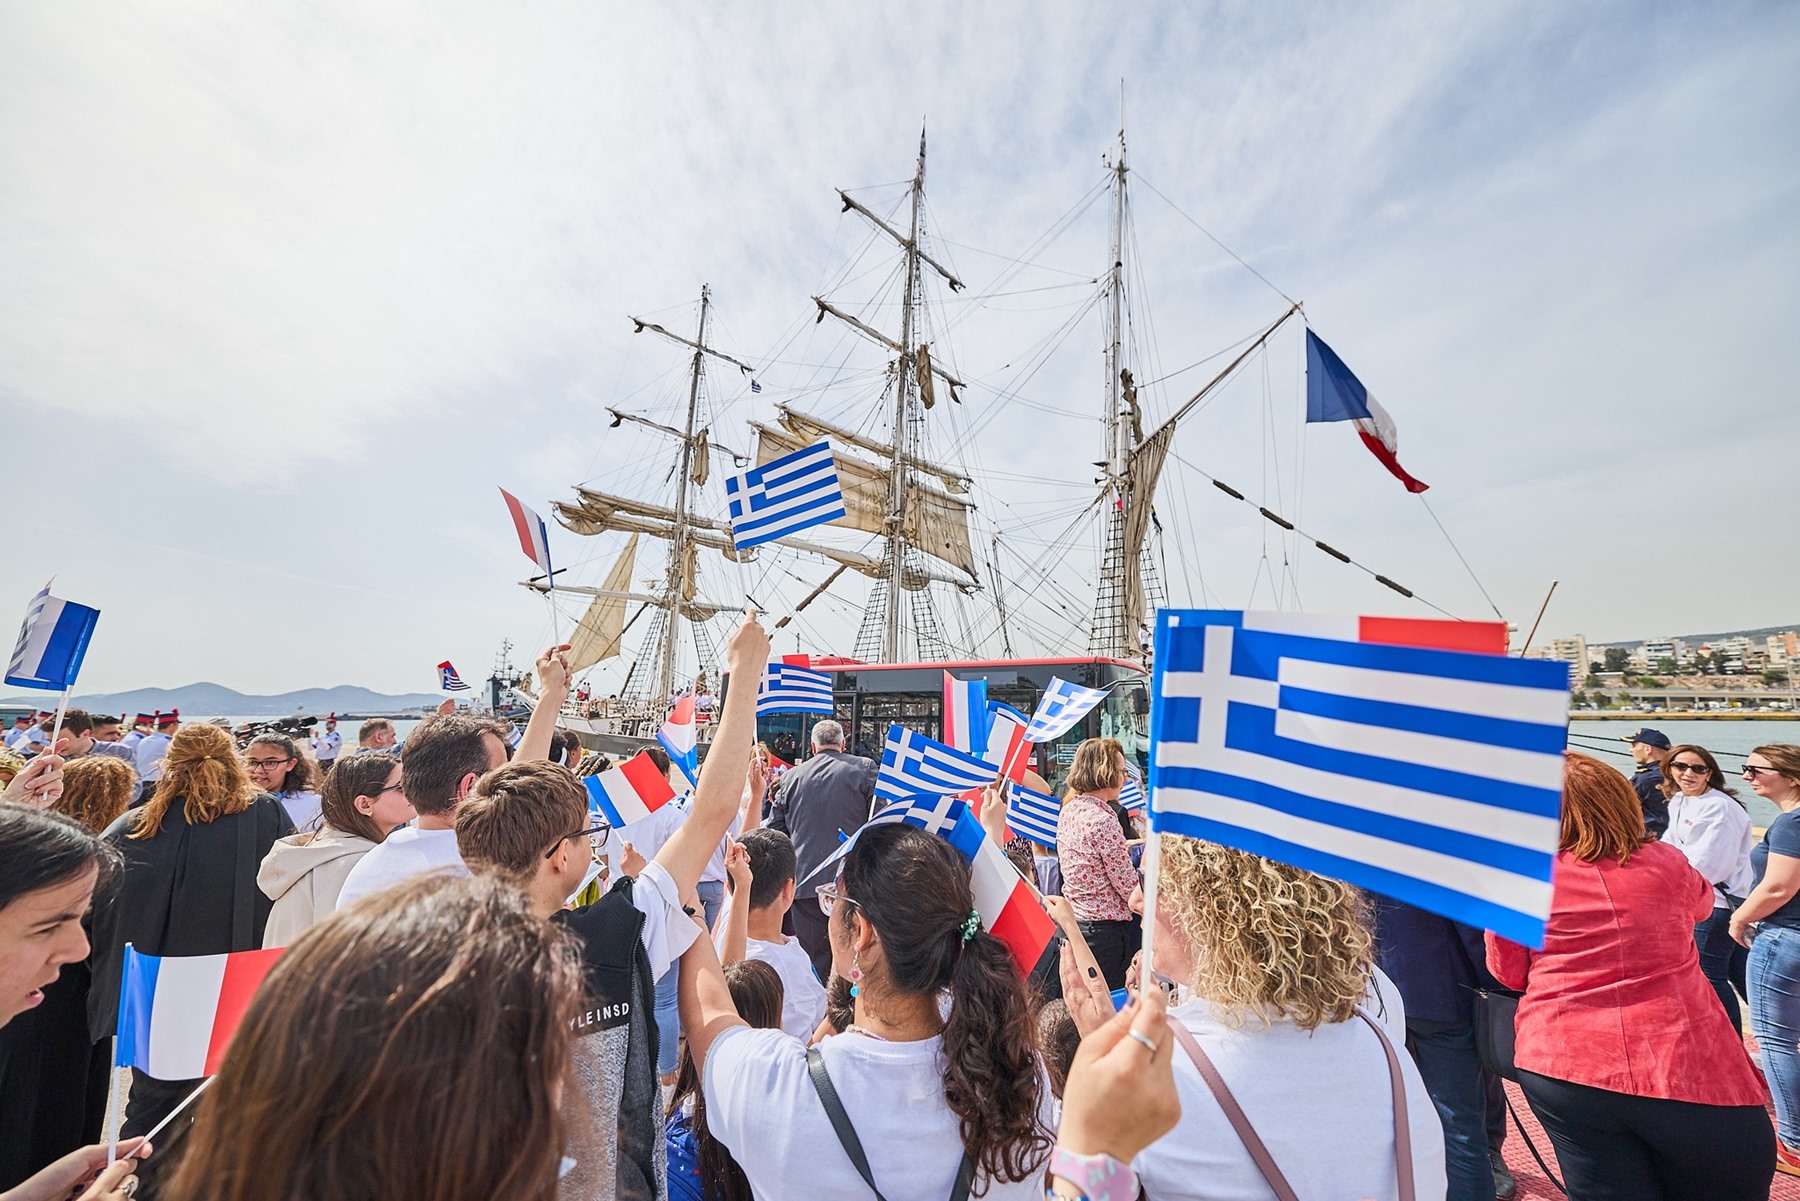 Ιστιοφόρο Belem Δήμος Πειραιά: Κατέπλευσε στο λιμάνι το “Ιστορικό Μνημείο”